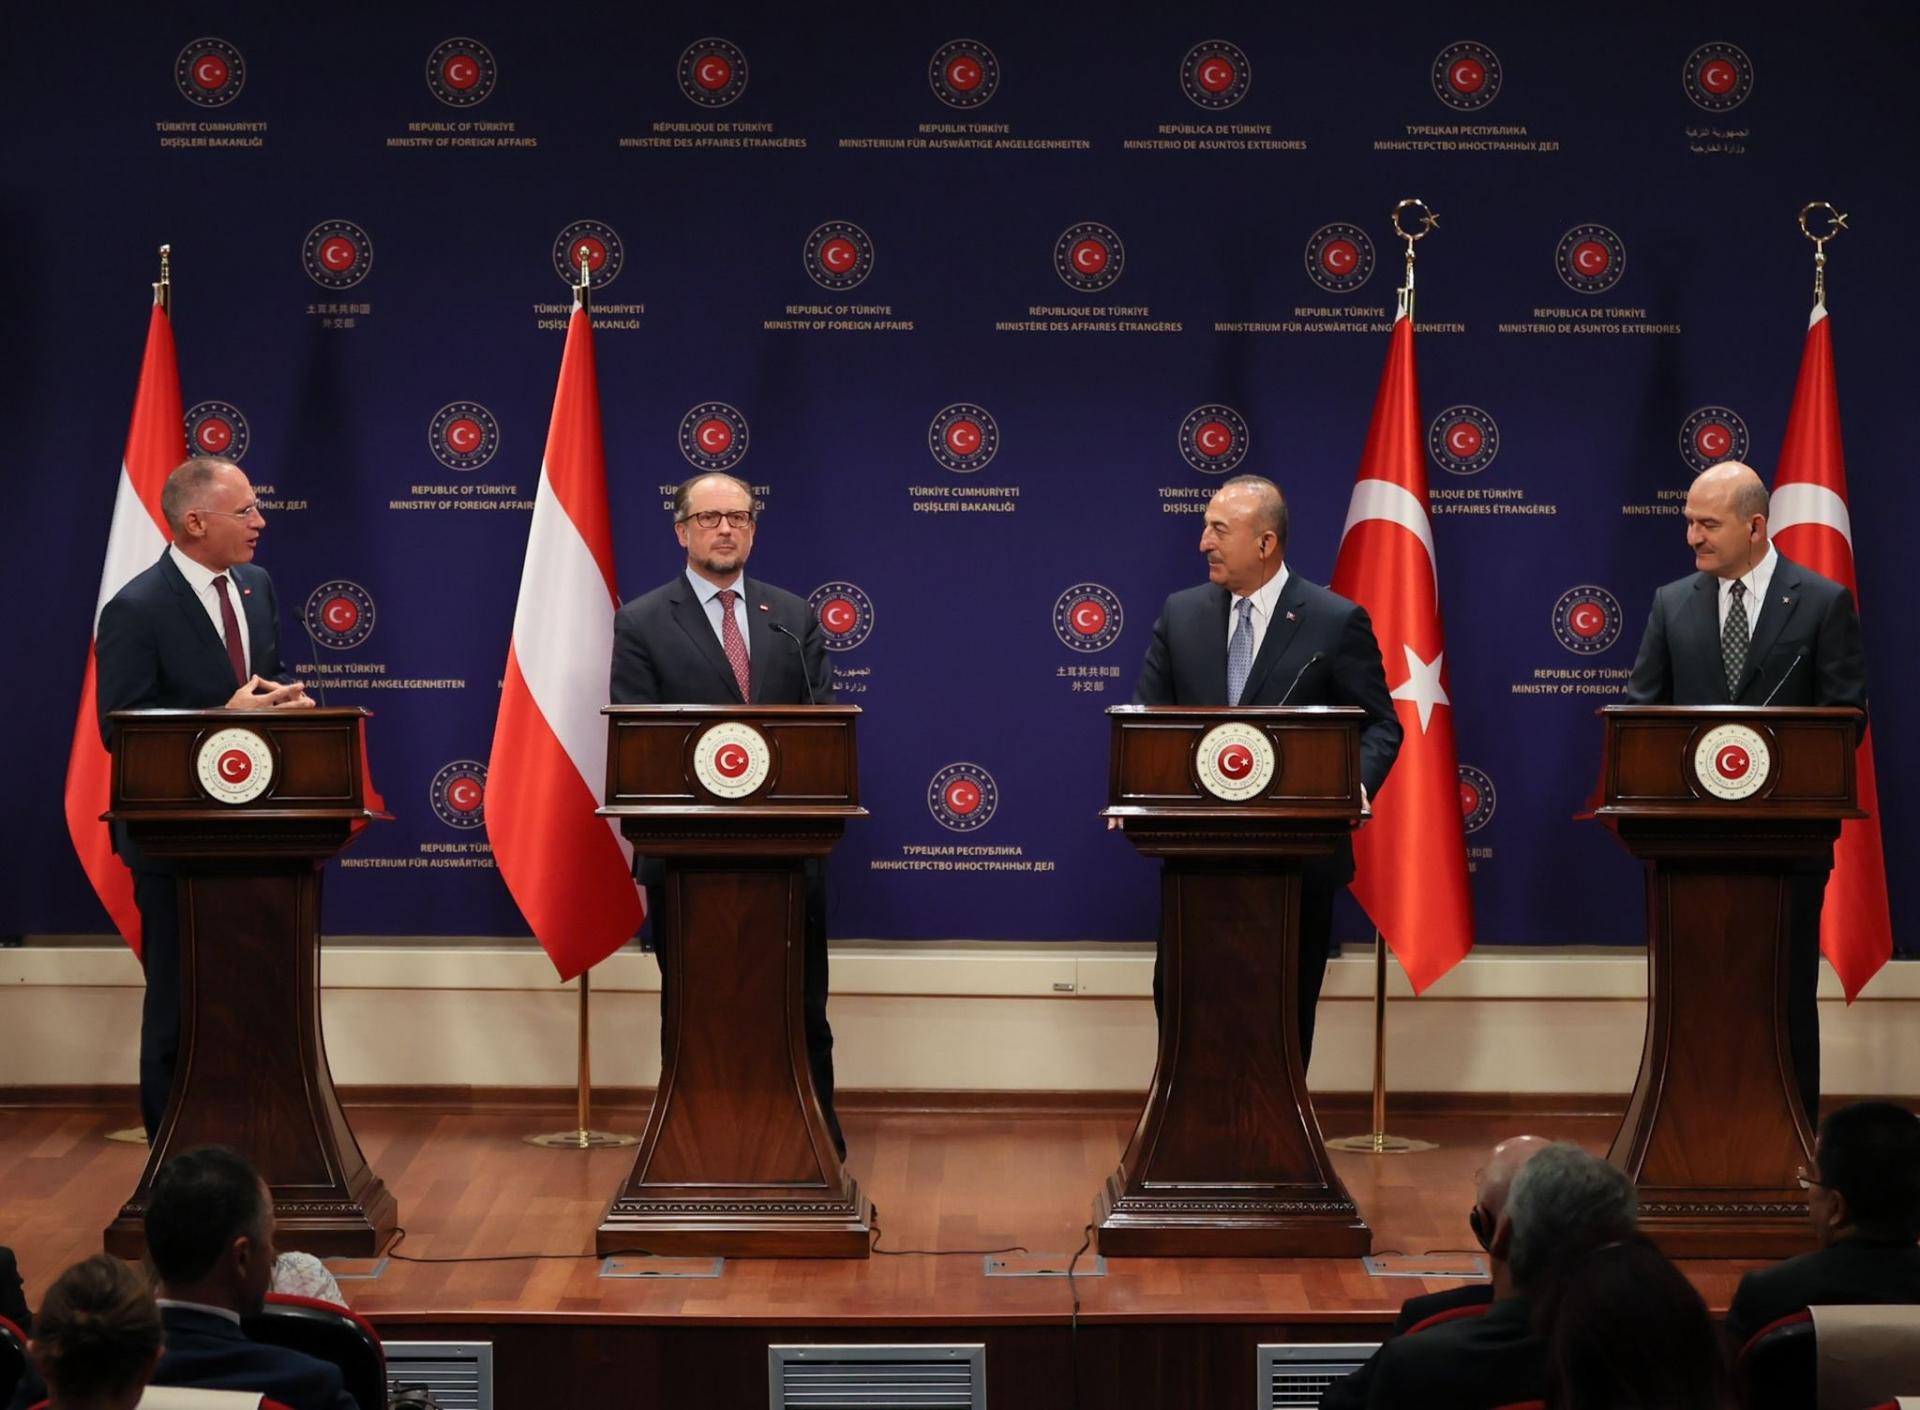 土耳其希望和亚美尼亚保持建设性对话